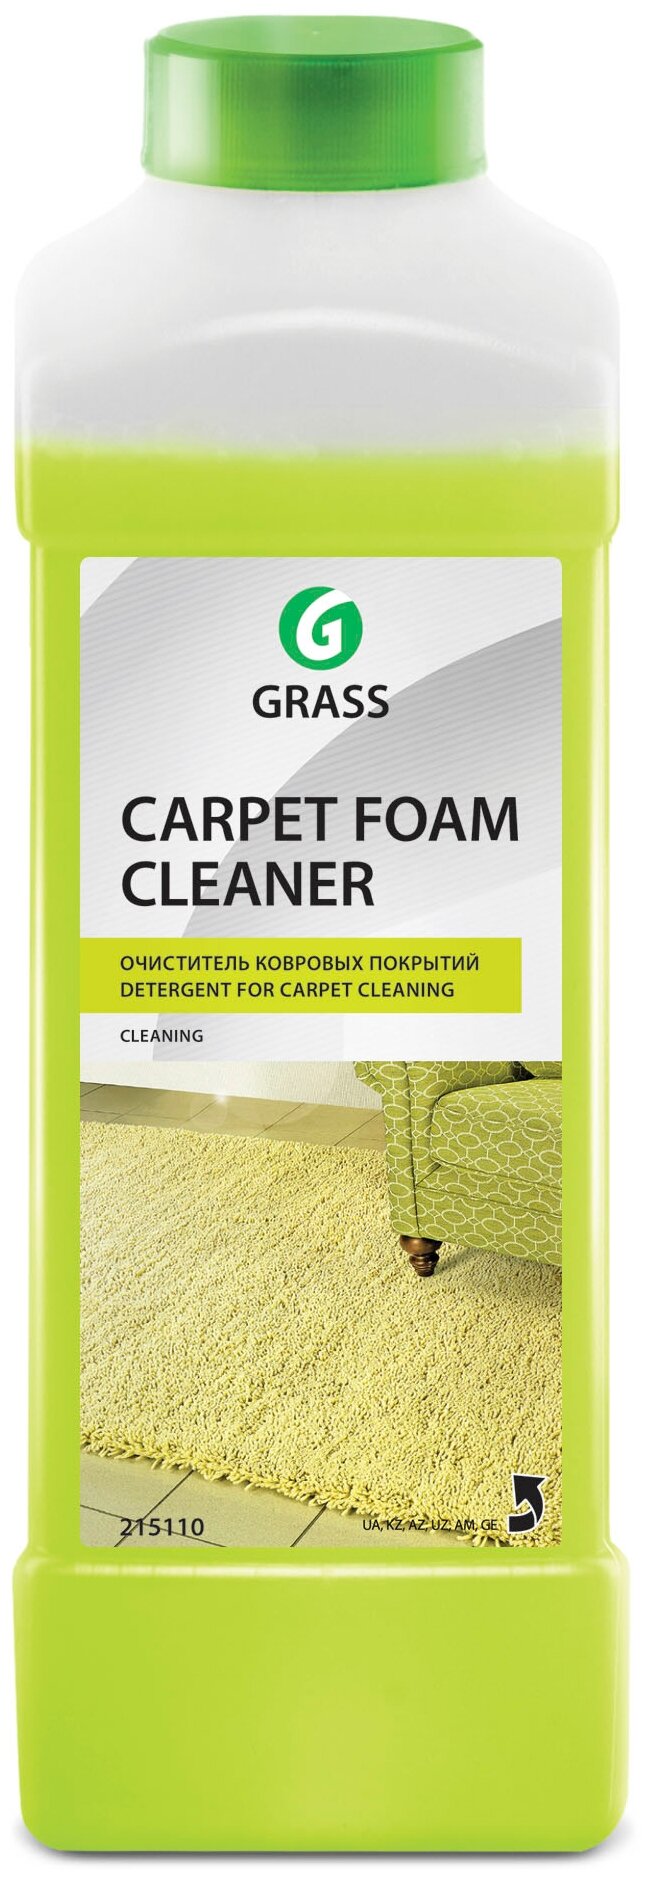 Очиститель ковровых покрытий Carpet foam cleaner Grass